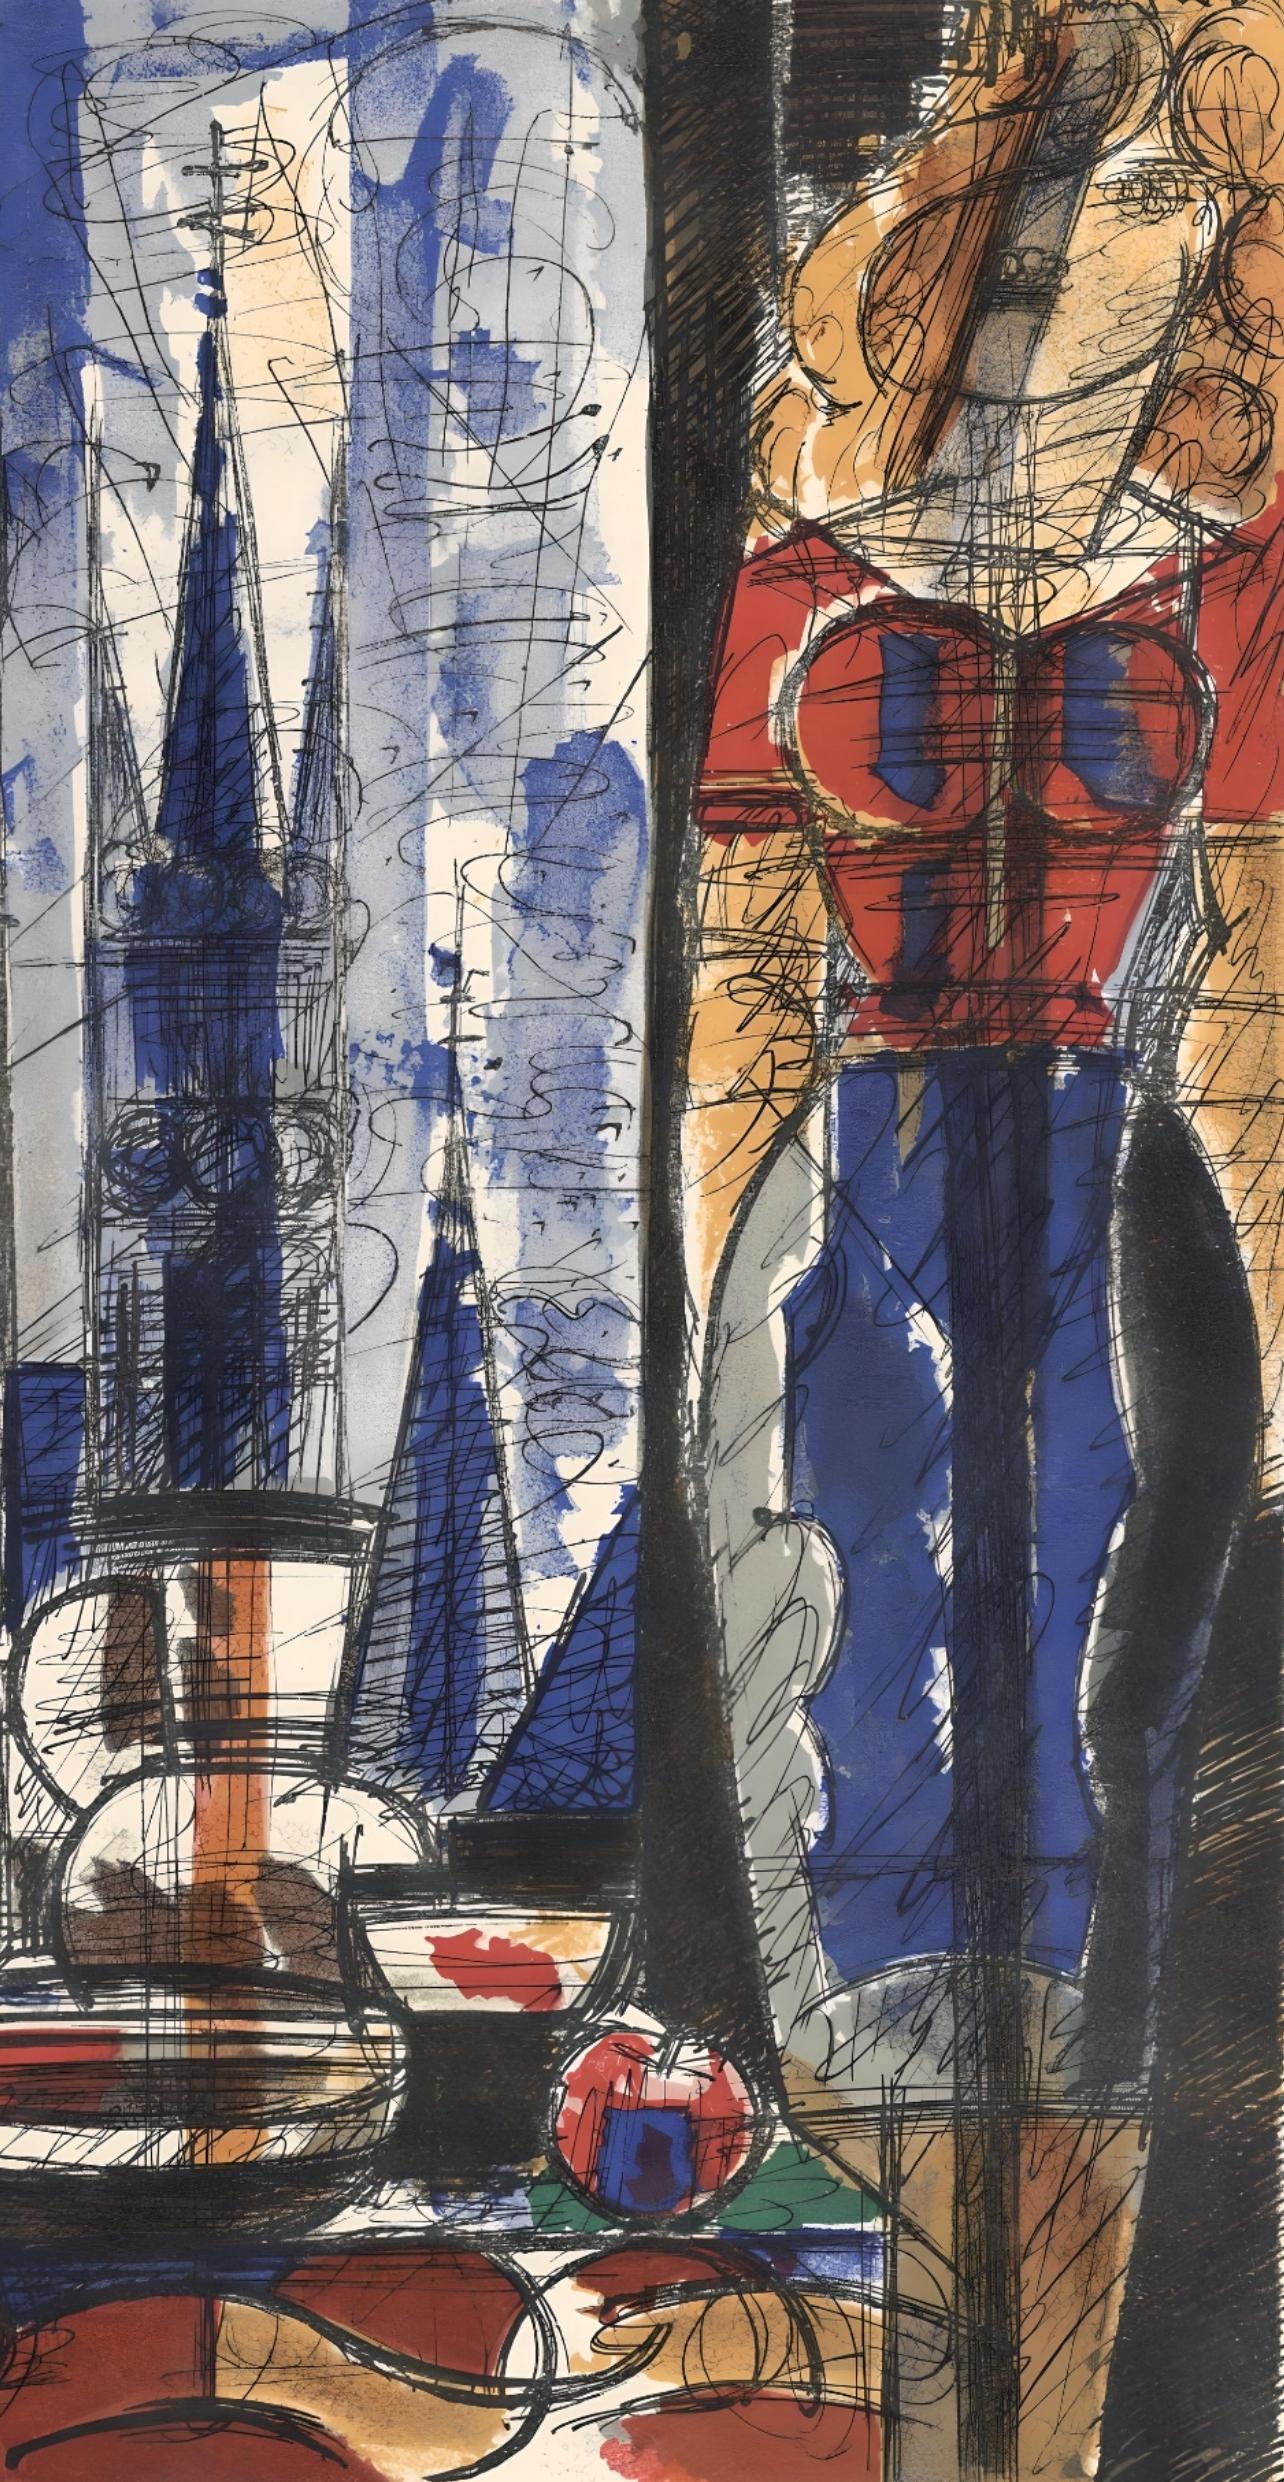 Gromaire, Interieur flamand, Verve : Revue Artistique et Littéraire (après) - Print de Marcel Gromaire